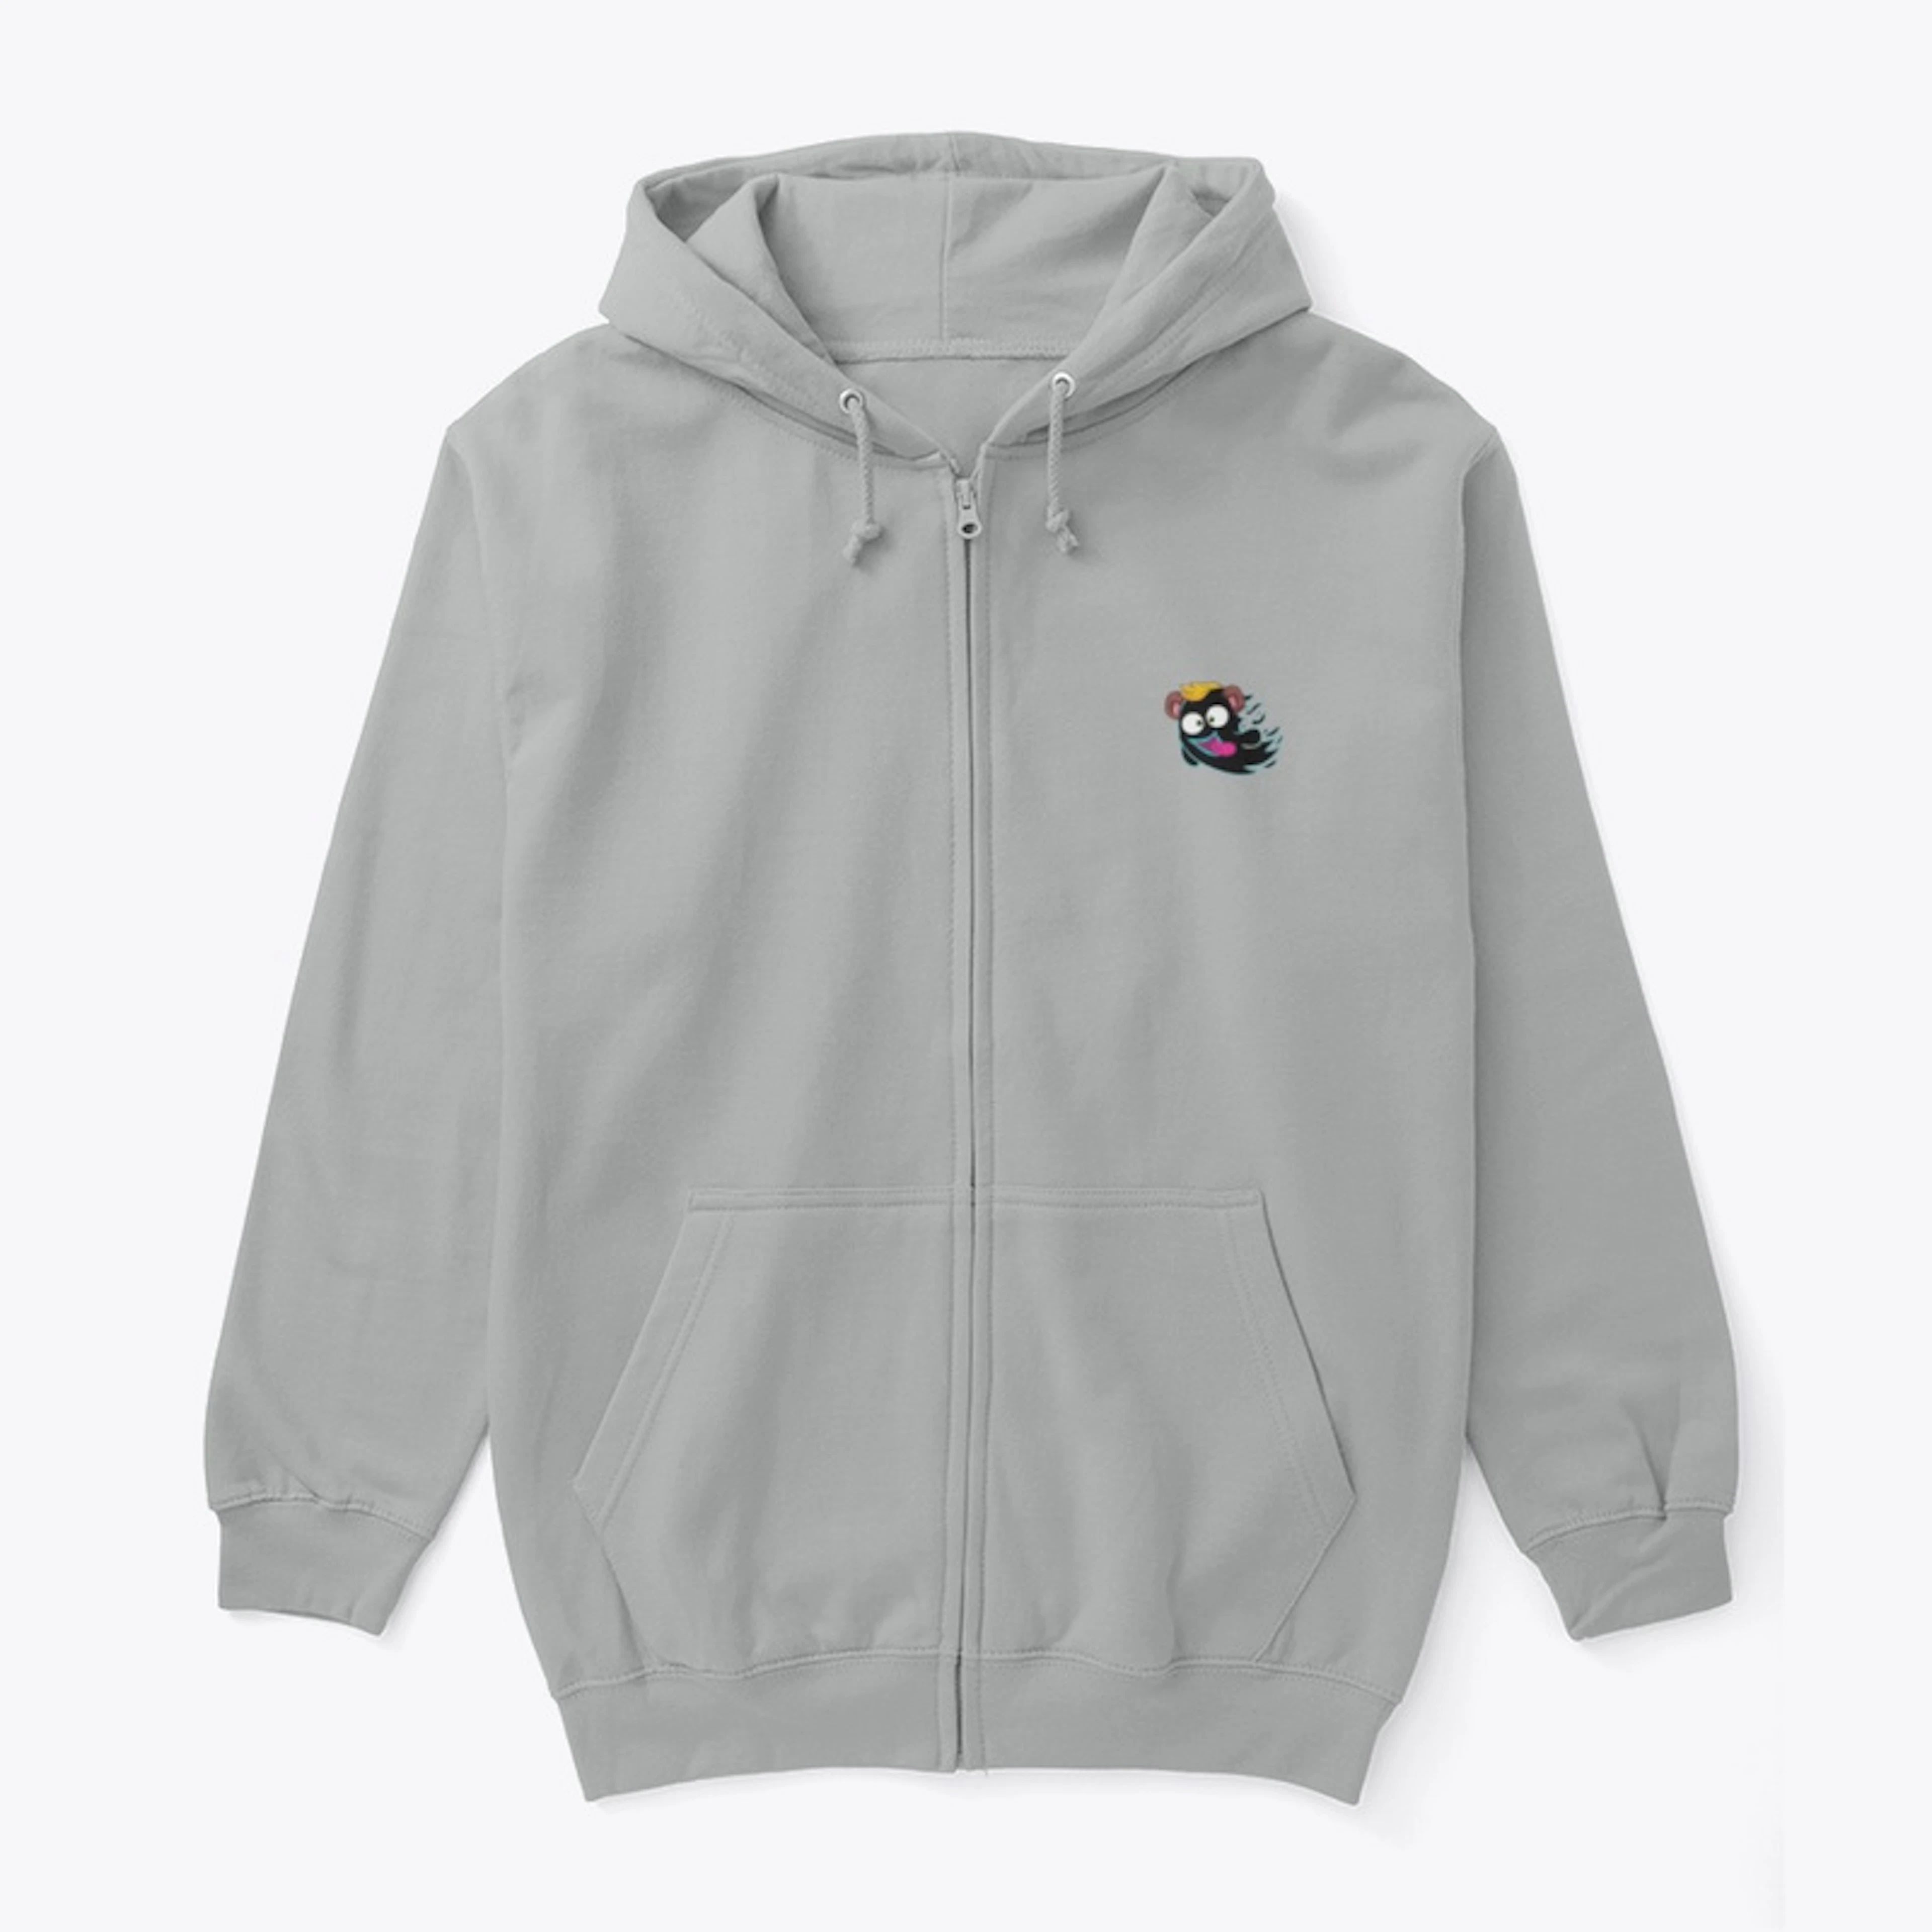 Ghost zip-up hoodie